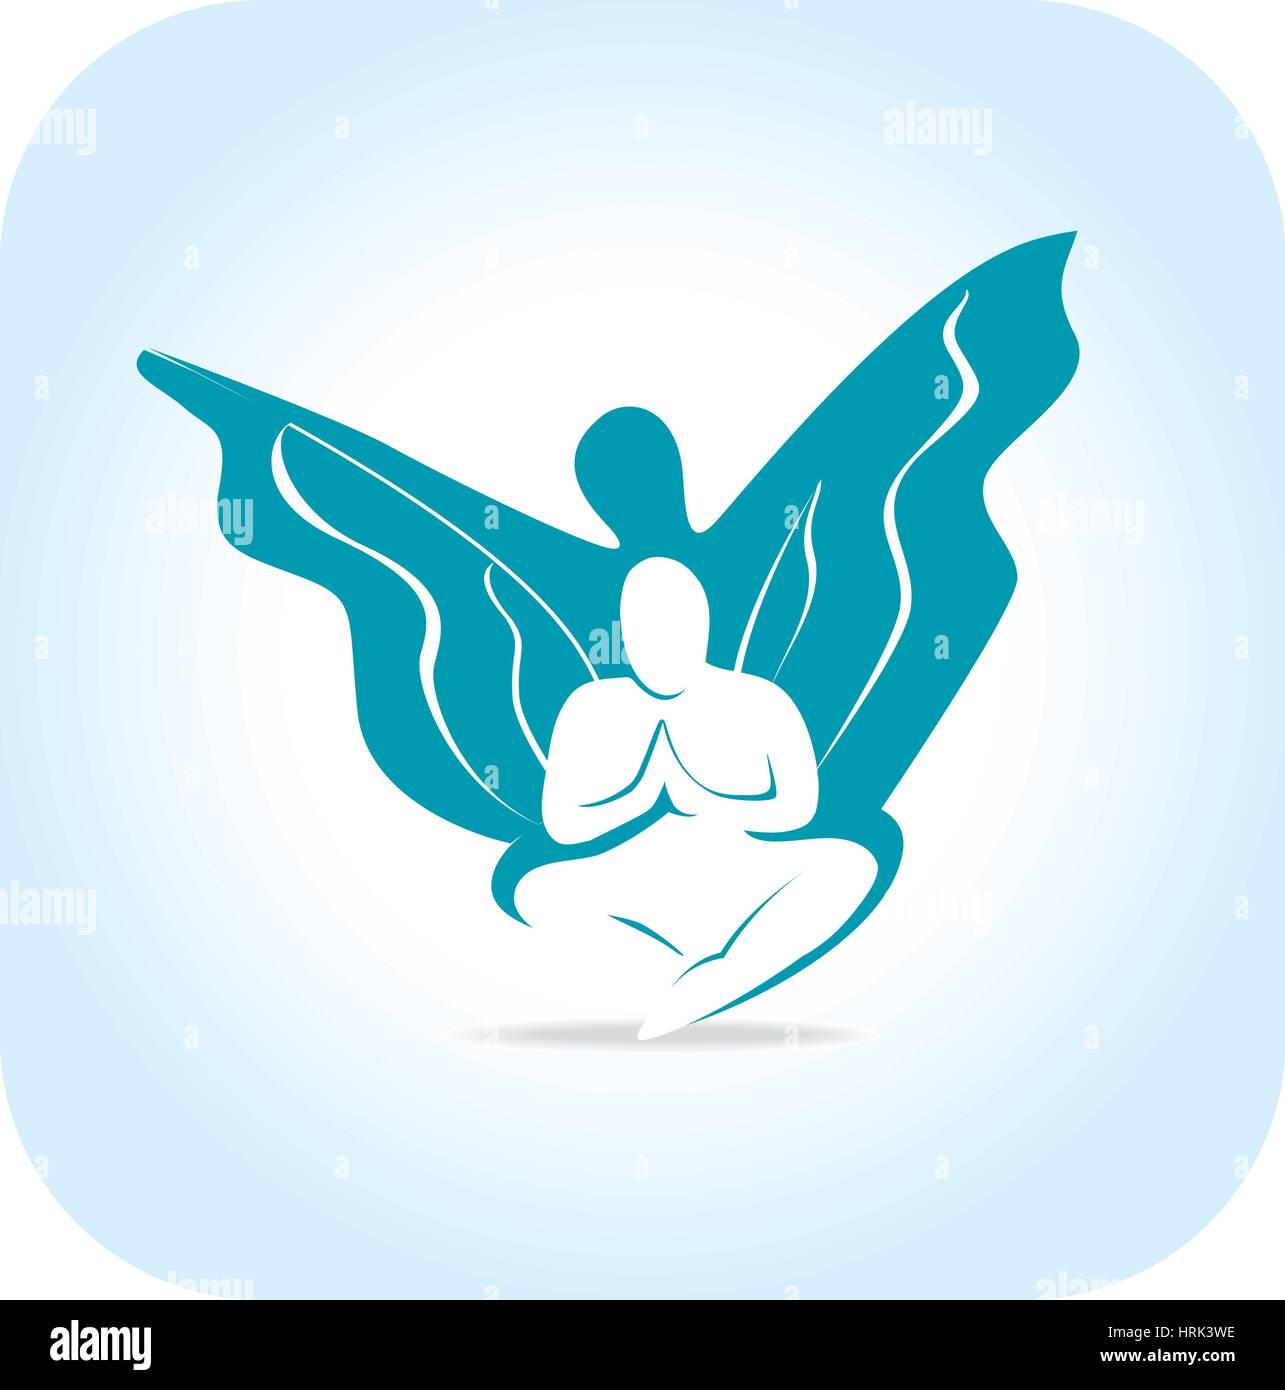 La liberté, l'éveil, une silhouette humaine avec des ailes Illustration de Vecteur